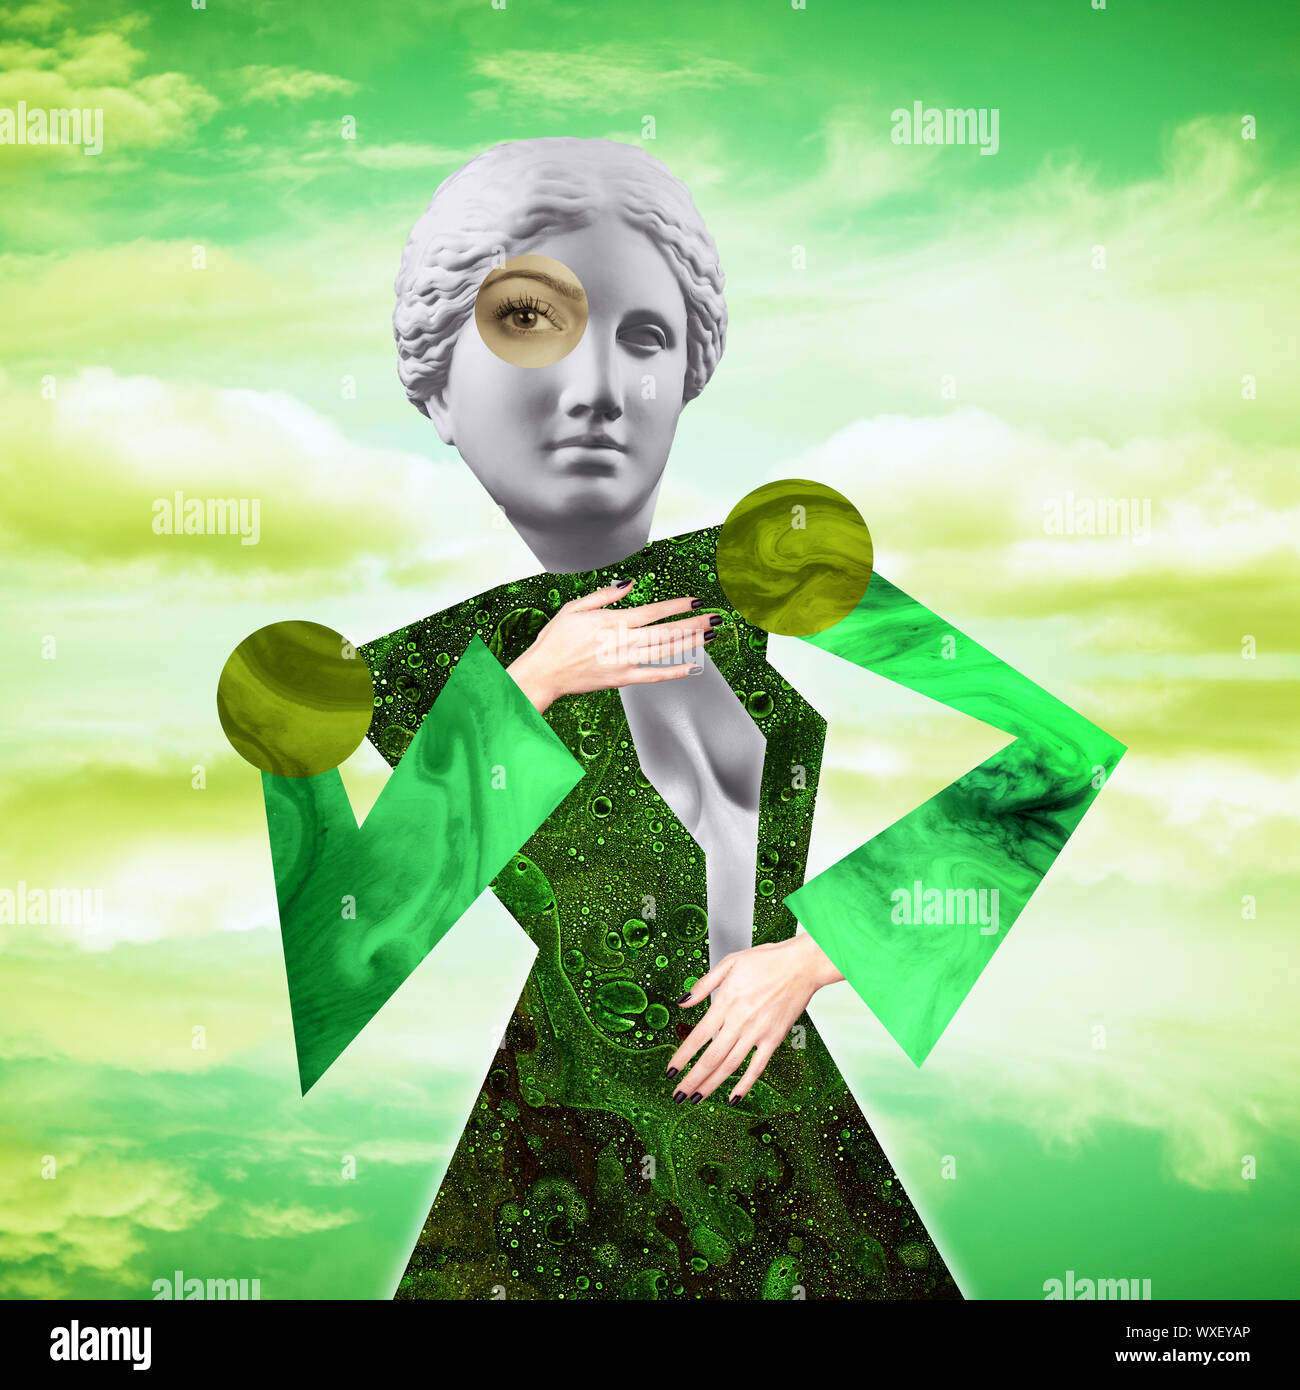 L'art conceptuel moderne poster avec un drôle de poupée dans un style massurrealism. Collage de l'art contemporain. Banque D'Images